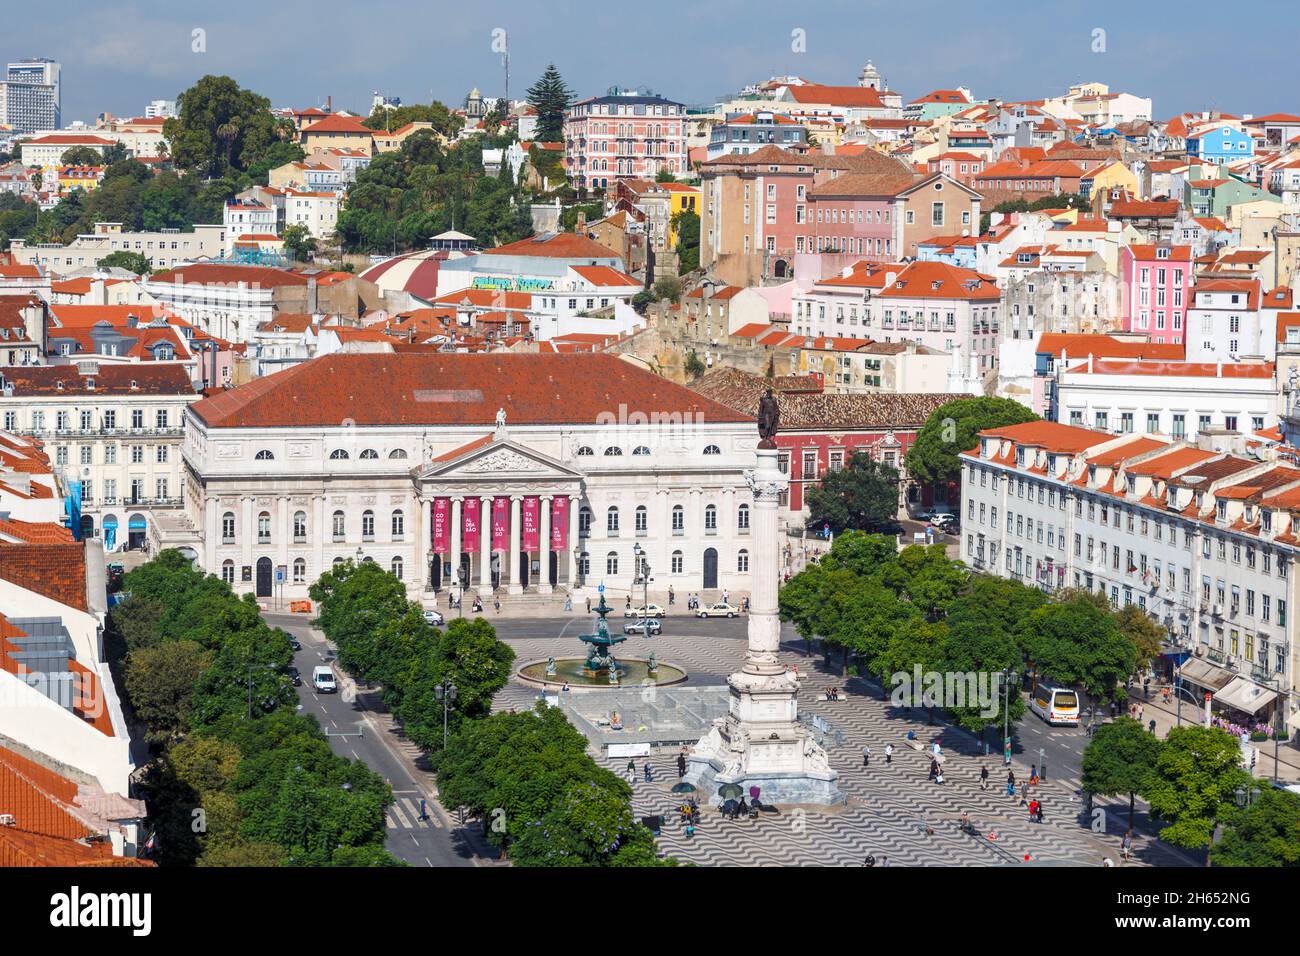 Lissabon, Portugal. Praca Dom Pedro IV, allgemein bekannt als Rossio. Das weiße Gebäude ist das Nationaltheater, Teatro Nacional Dona Maria II. Die Spalte Stockfoto